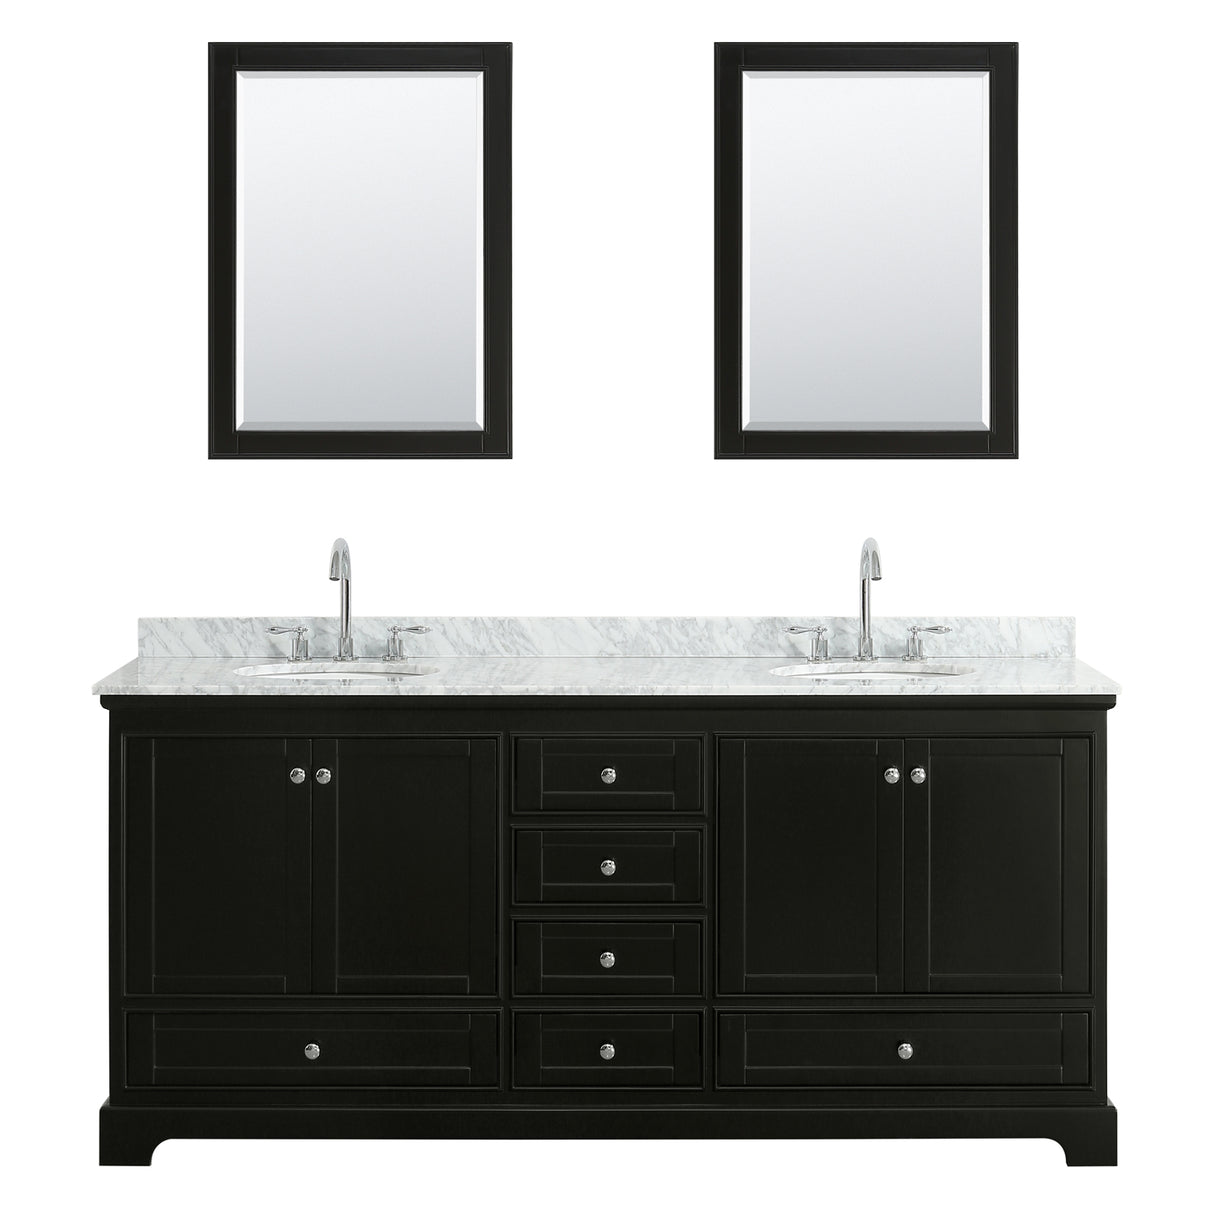 Deborah 80 Inch Double Bathroom Vanity in Dark Espresso White Carrara Marble Countertop Undermount Oval Sinks and Medicine Cabinets